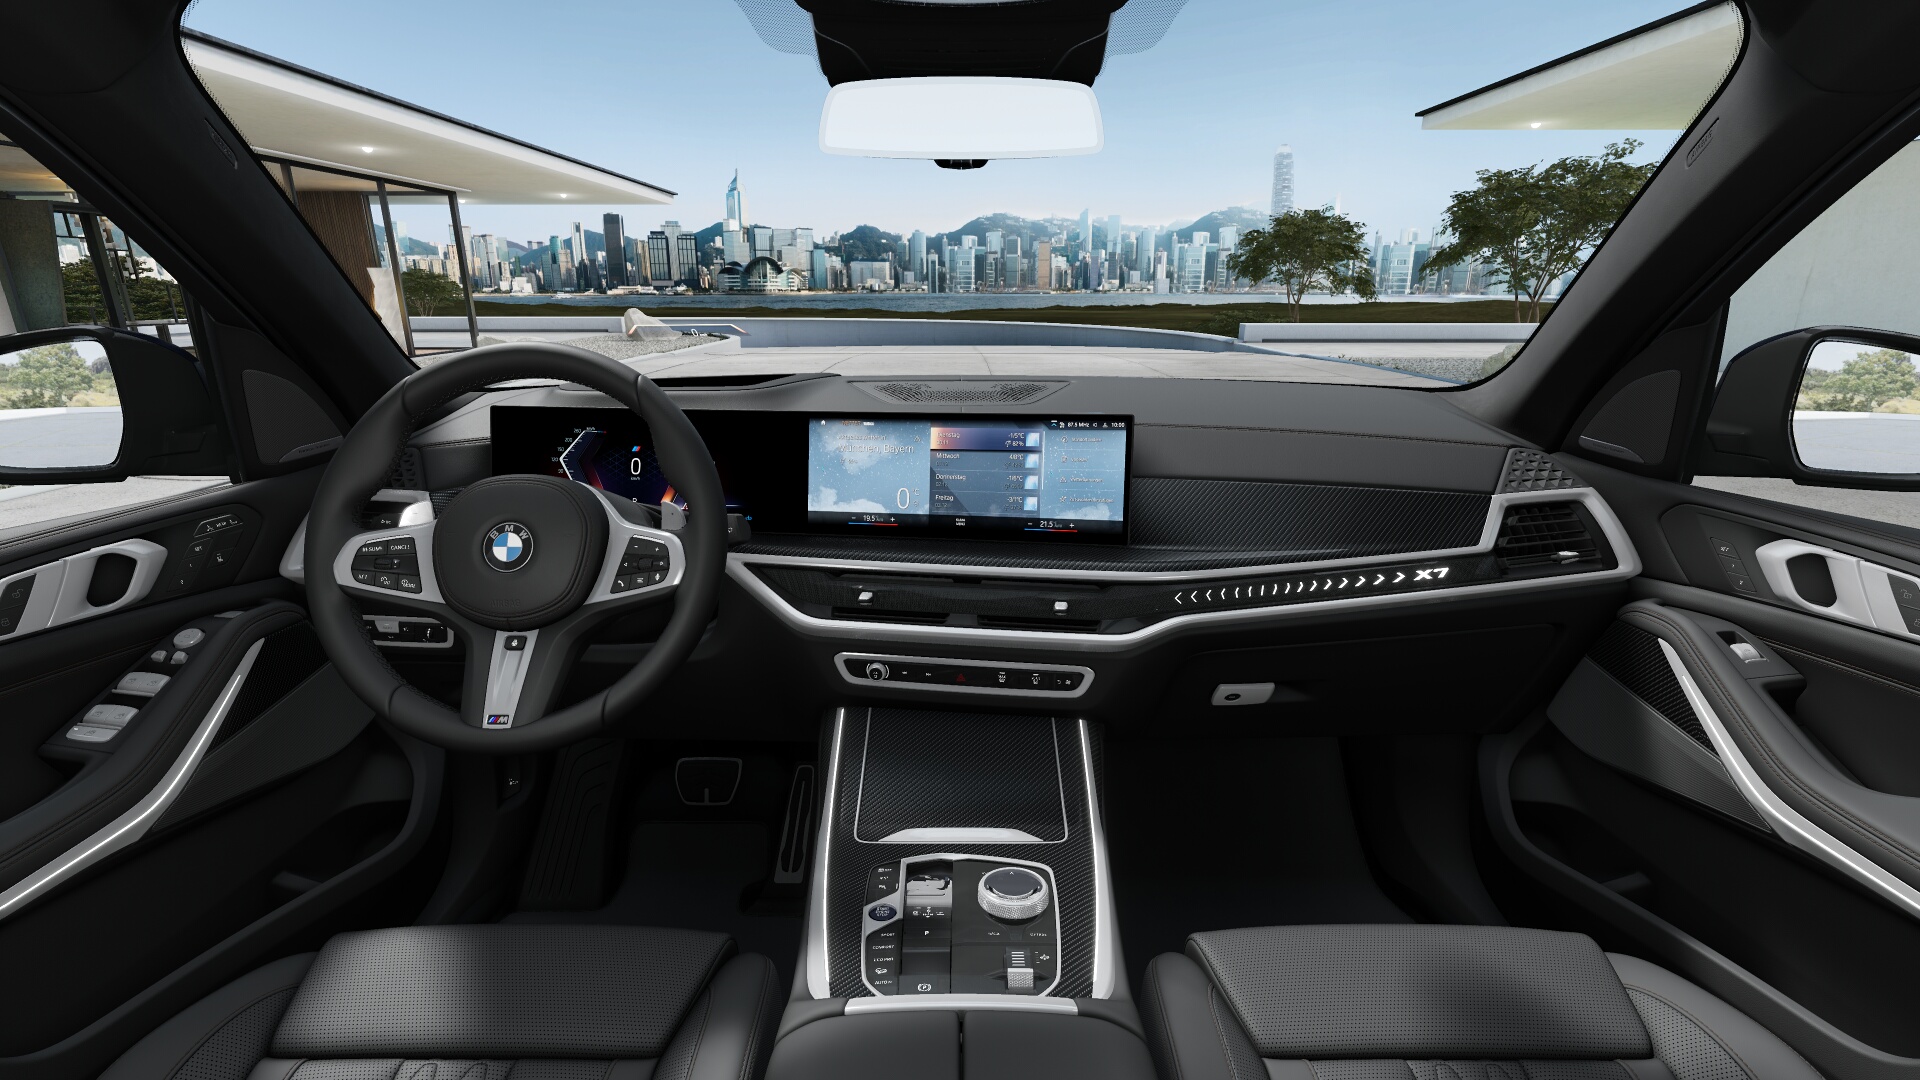 BMW X7 40d xDrive Msport | FACELIFT | SKLADEM | nové české auto ihned k předání | nejoblíbenější velké SUV s naftovým motorem 340 koní | modrá Tanzanite s černou kůží | super výbava | skvělá cena | nákup online | AUTOiBUY.com